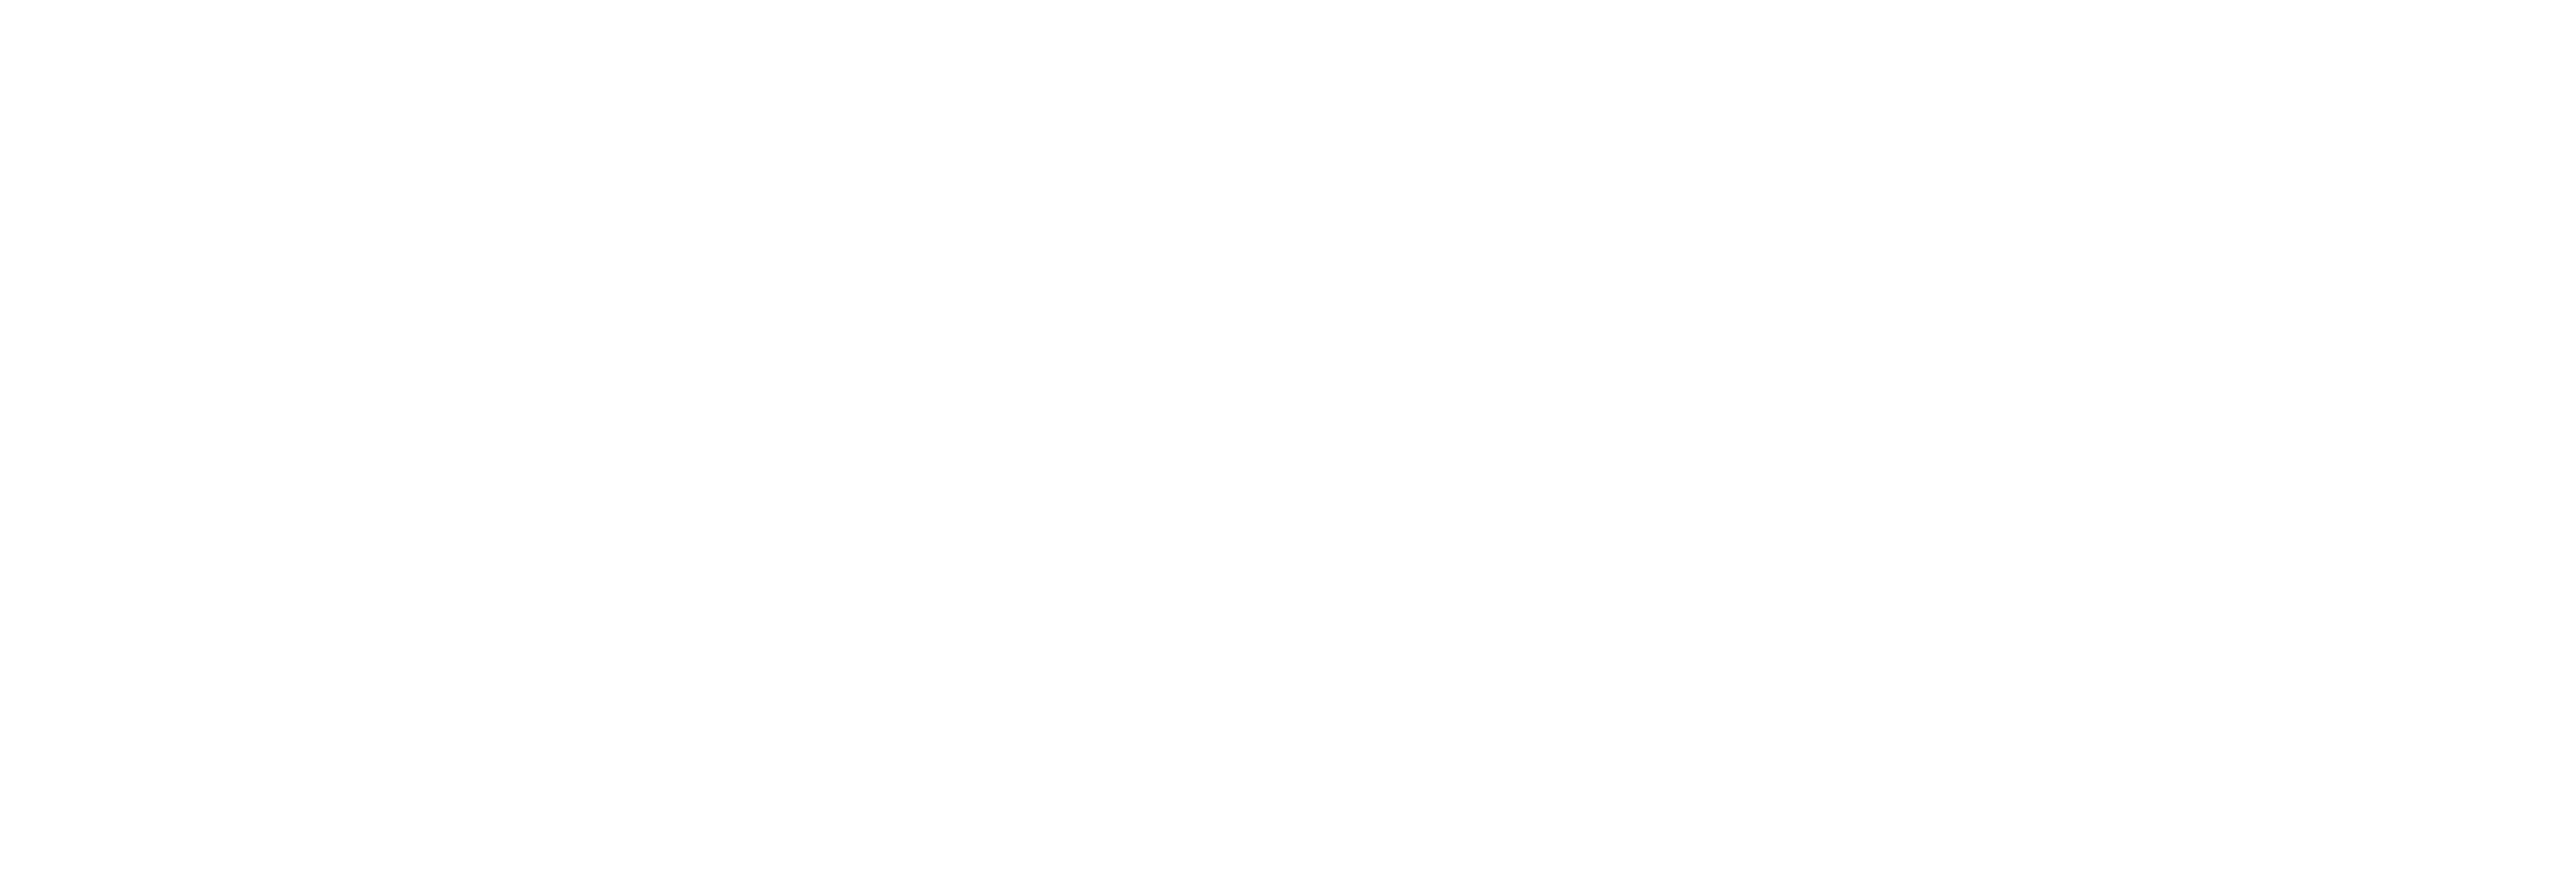 AniCura La Corraliza Hospital Veterinario logo